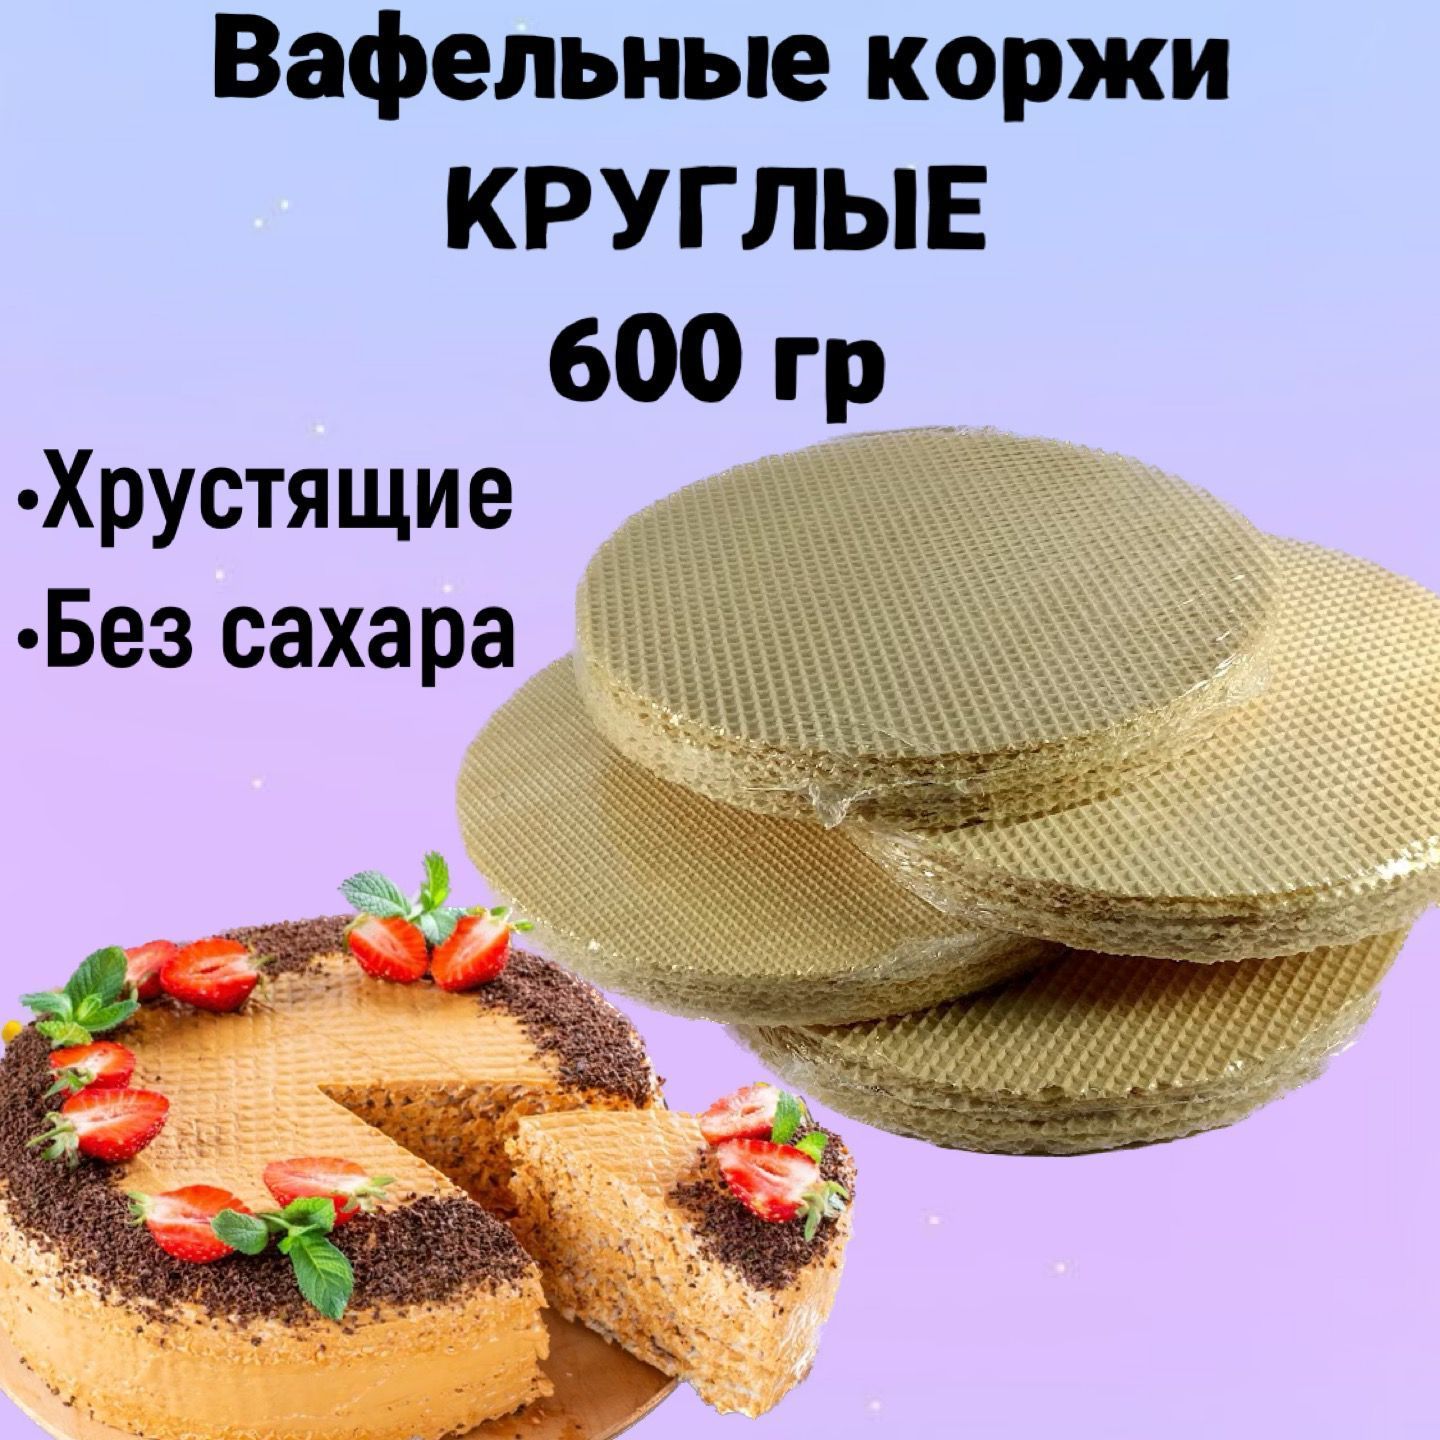 Вафельный торт со сгущёнкой - пошаговый рецепт с фото | Азбука рецептов